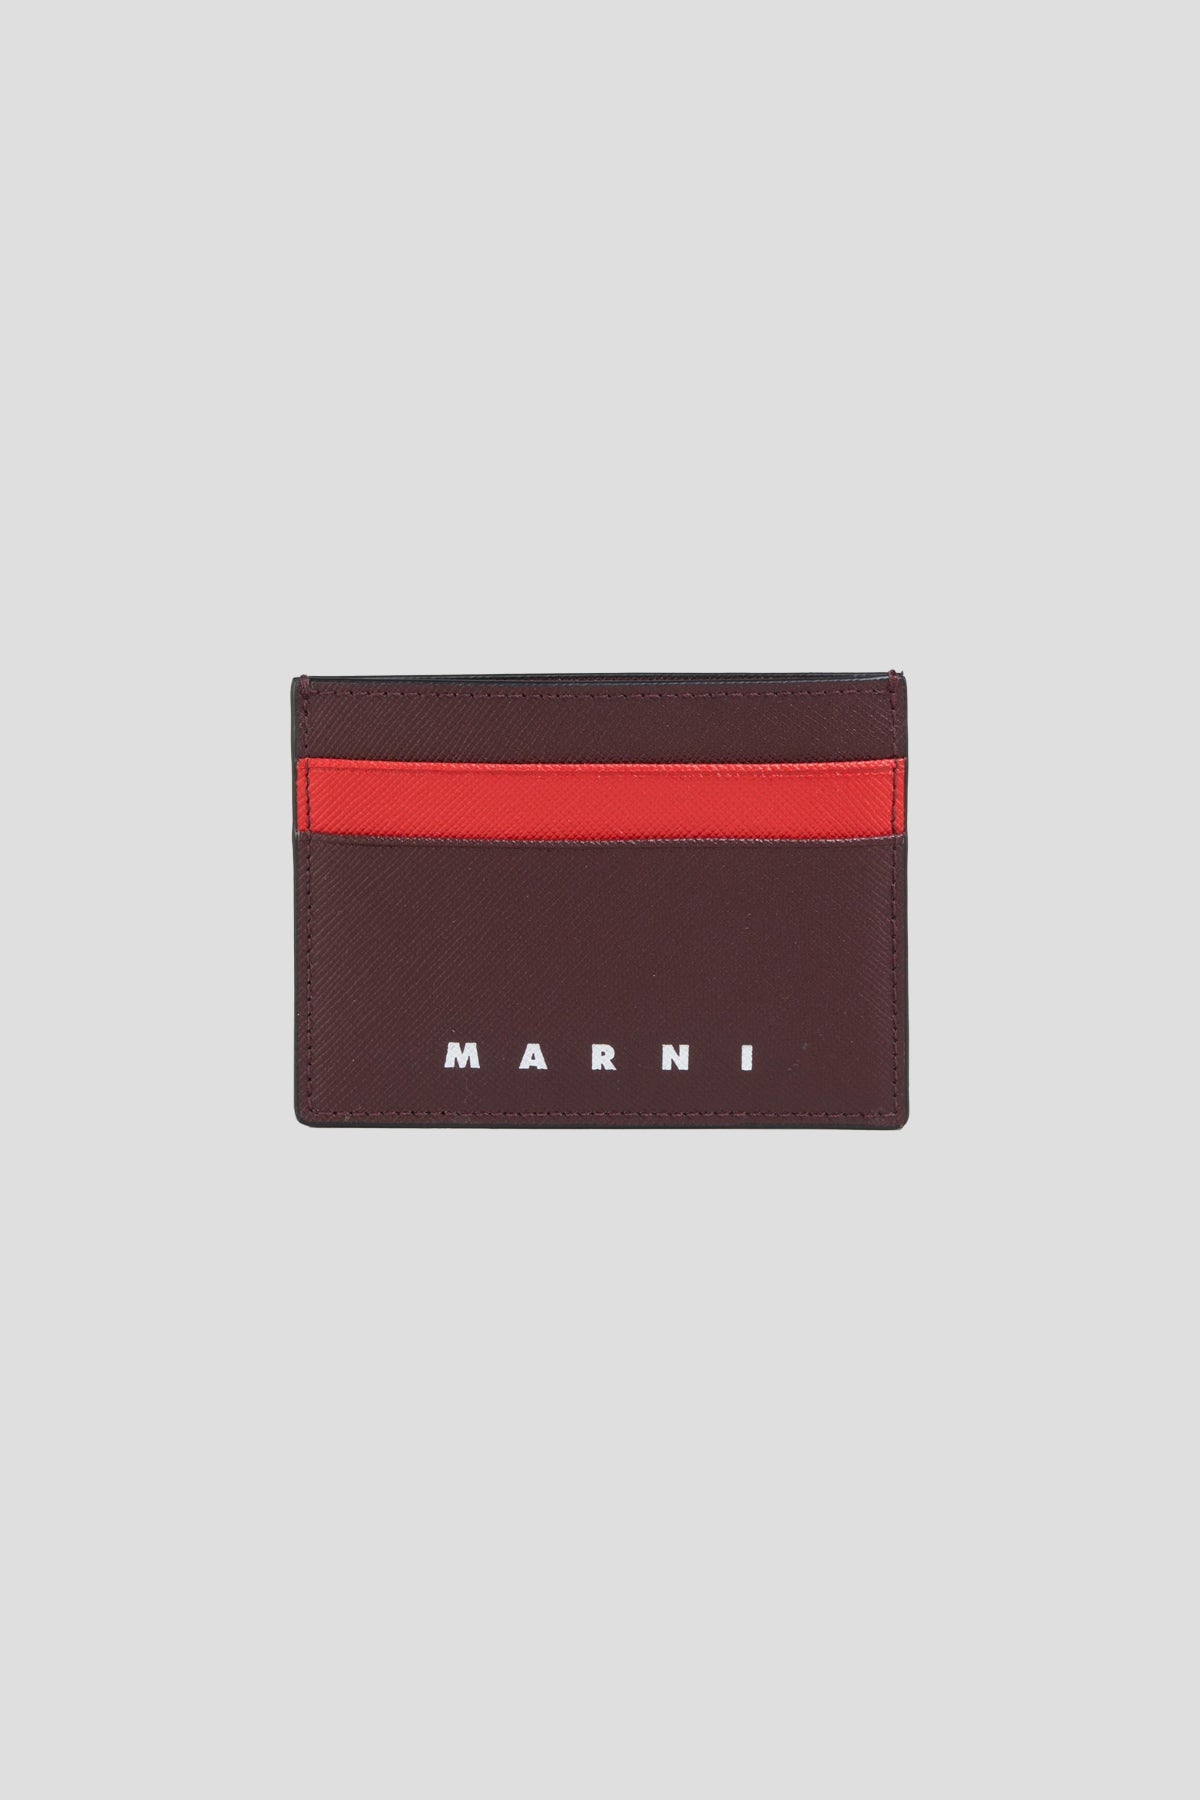 Marni Logo Card Holder